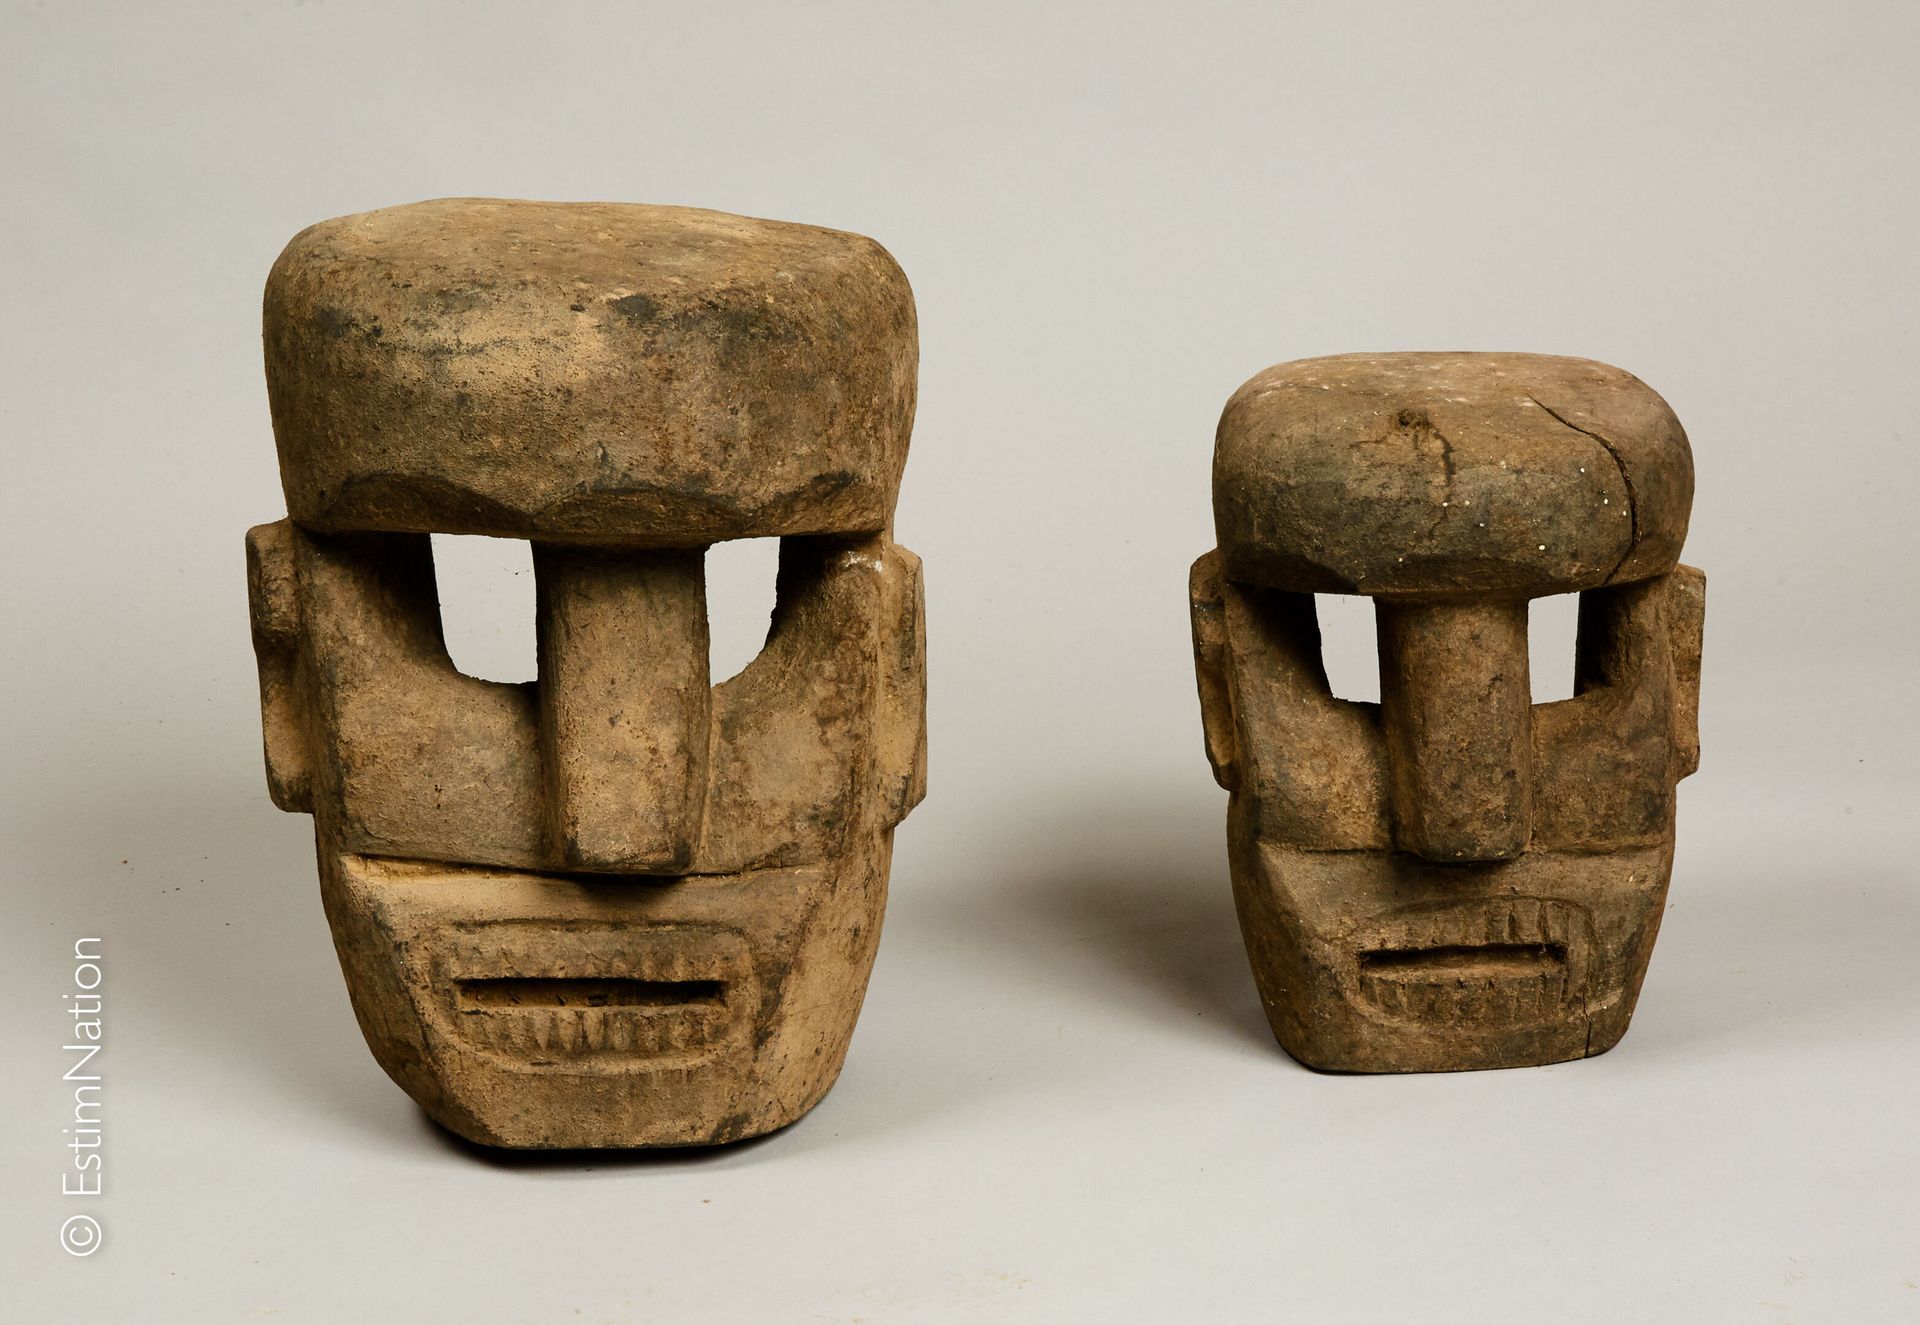 TIMOR TIMOR



Due maschere in legno intagliato e pigmenti naturali che mostrano&hellip;